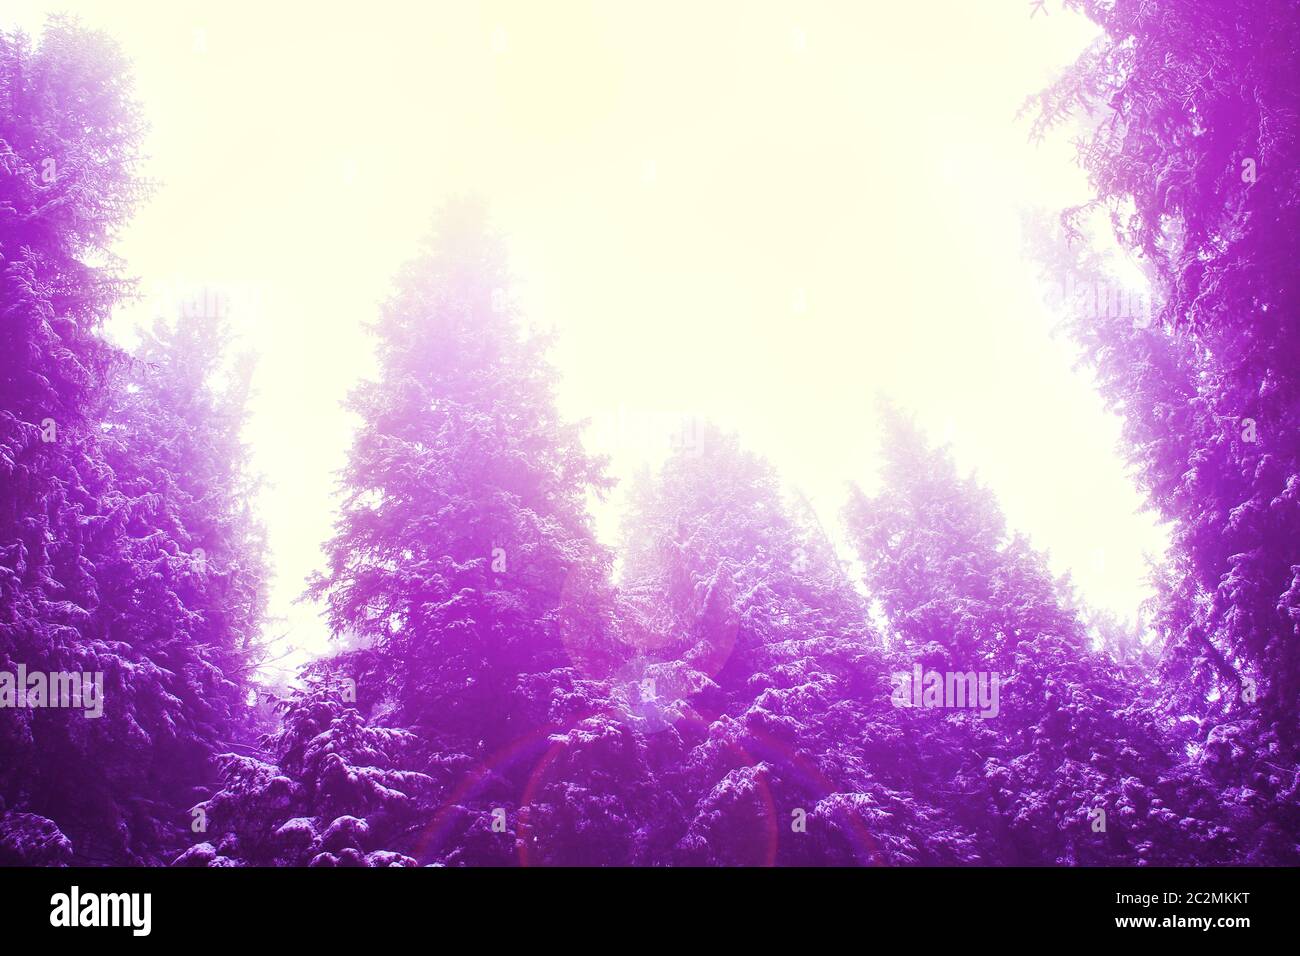 Les arbres à fourrure dans la forêt en couleurs violettes. Forêt de sapin dans la lumière ultraviolette. Poutres de lumière en épicéa Banque D'Images